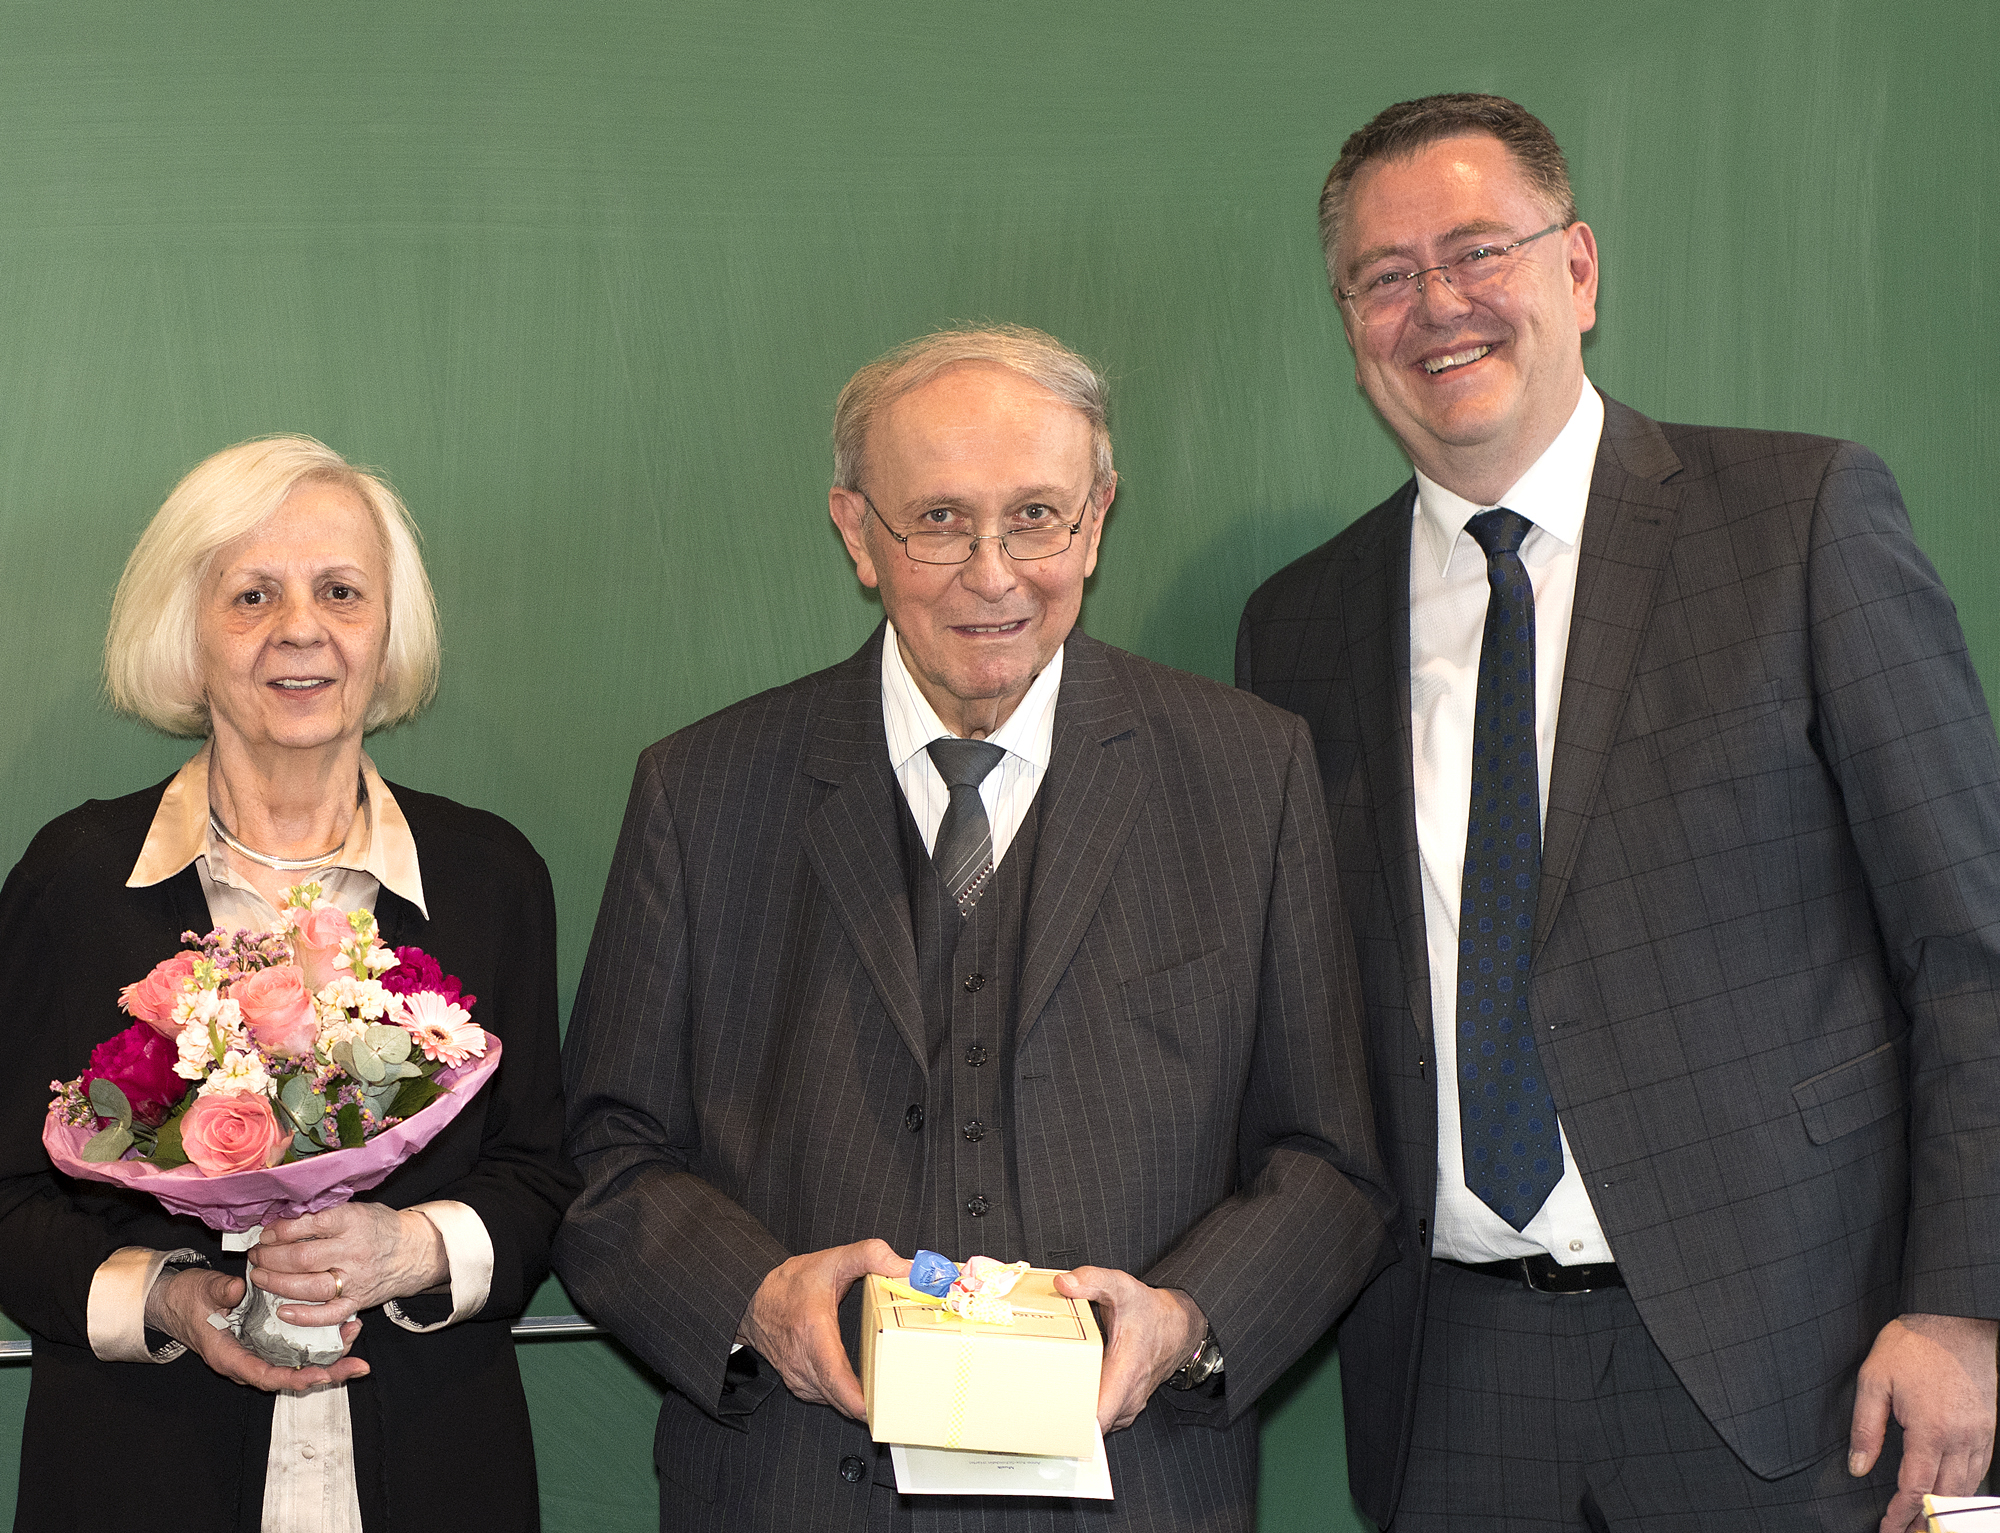 Marcus Huppertz, der Pflegedirektor des Uniklinikums Würzburg (rechts), ehrte die Eheleute Maria und Antonio Lucchetta, die vor 35 Jahren die Grünen Damen in Würzburg gründeten.